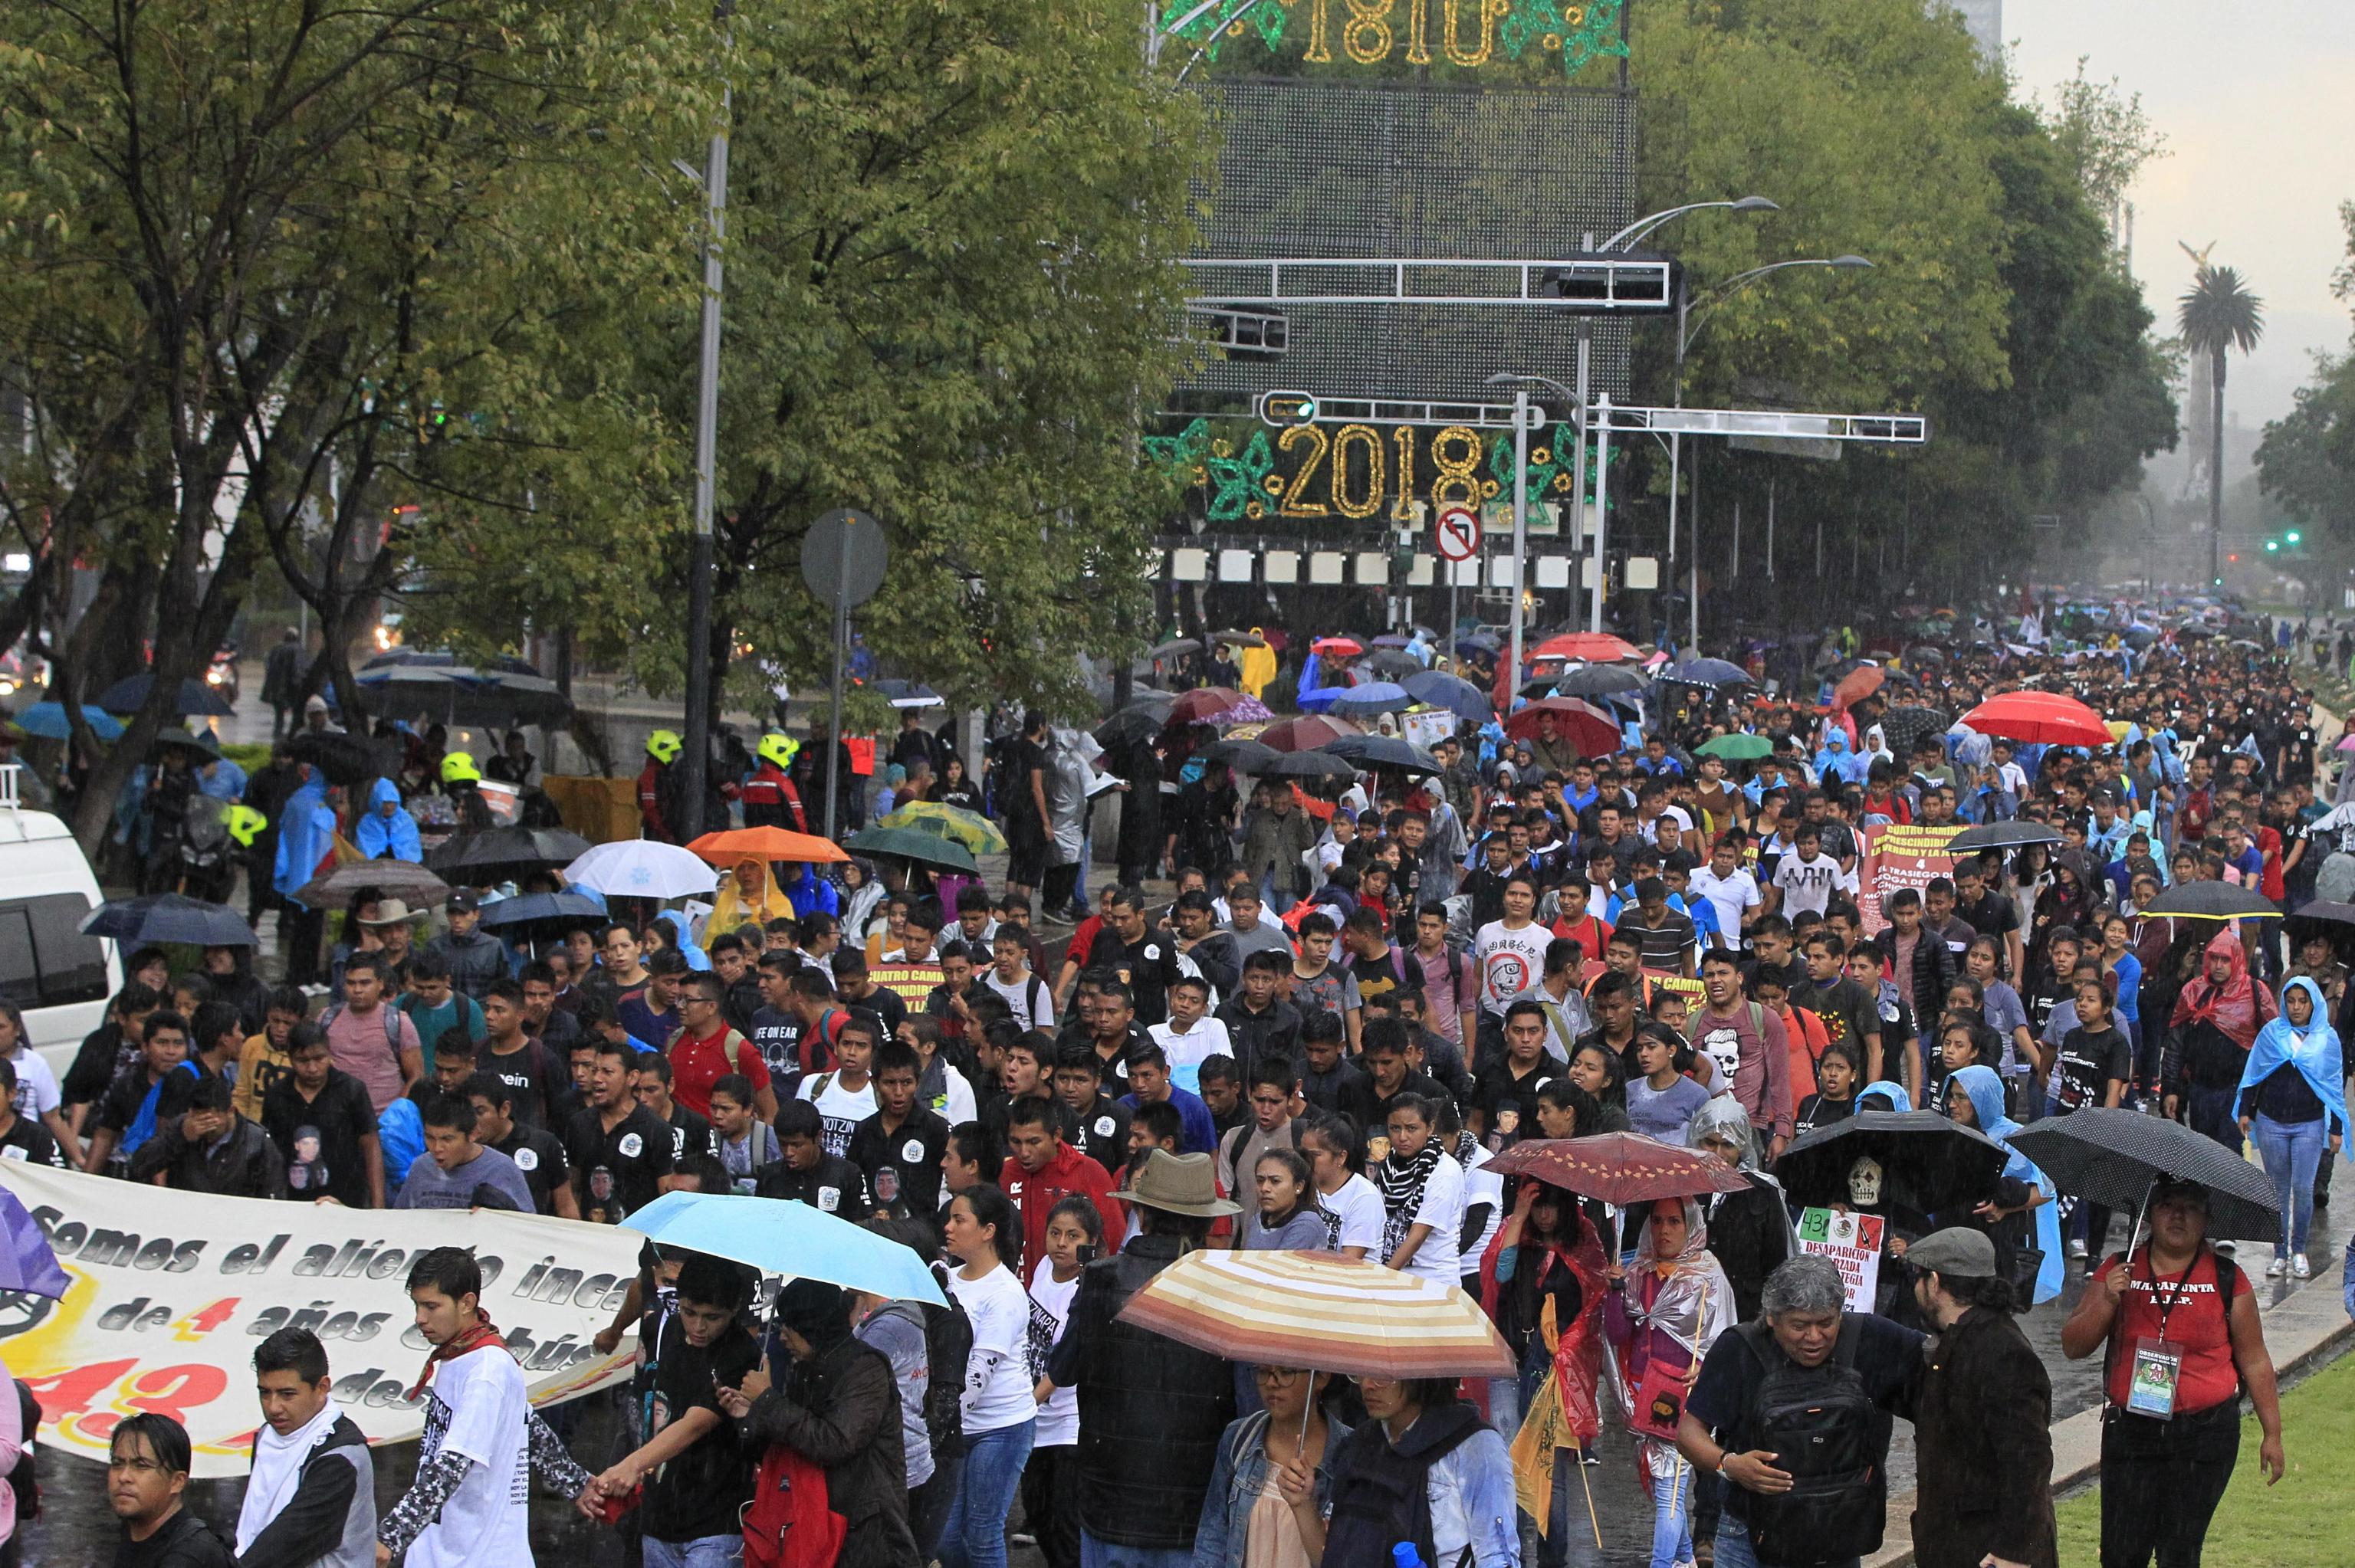 Il lungo corteo sfila nelle strade centrali di Città del Messico